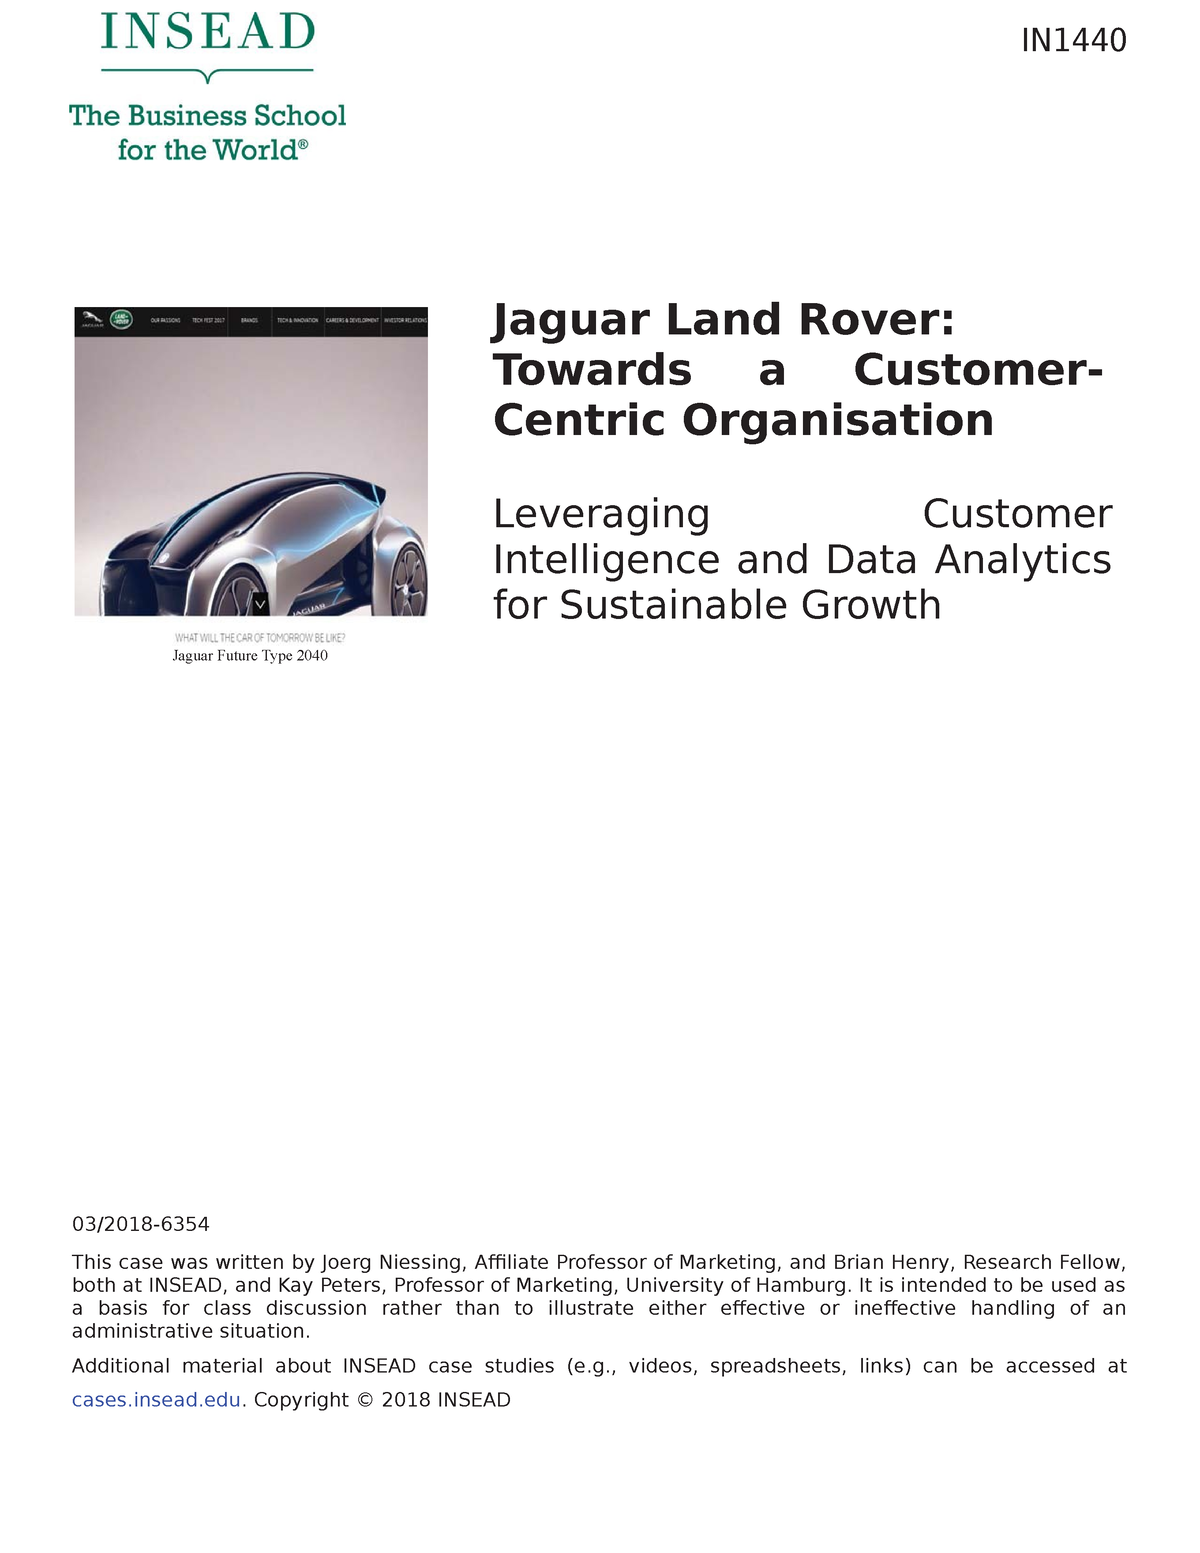 jaguar case study